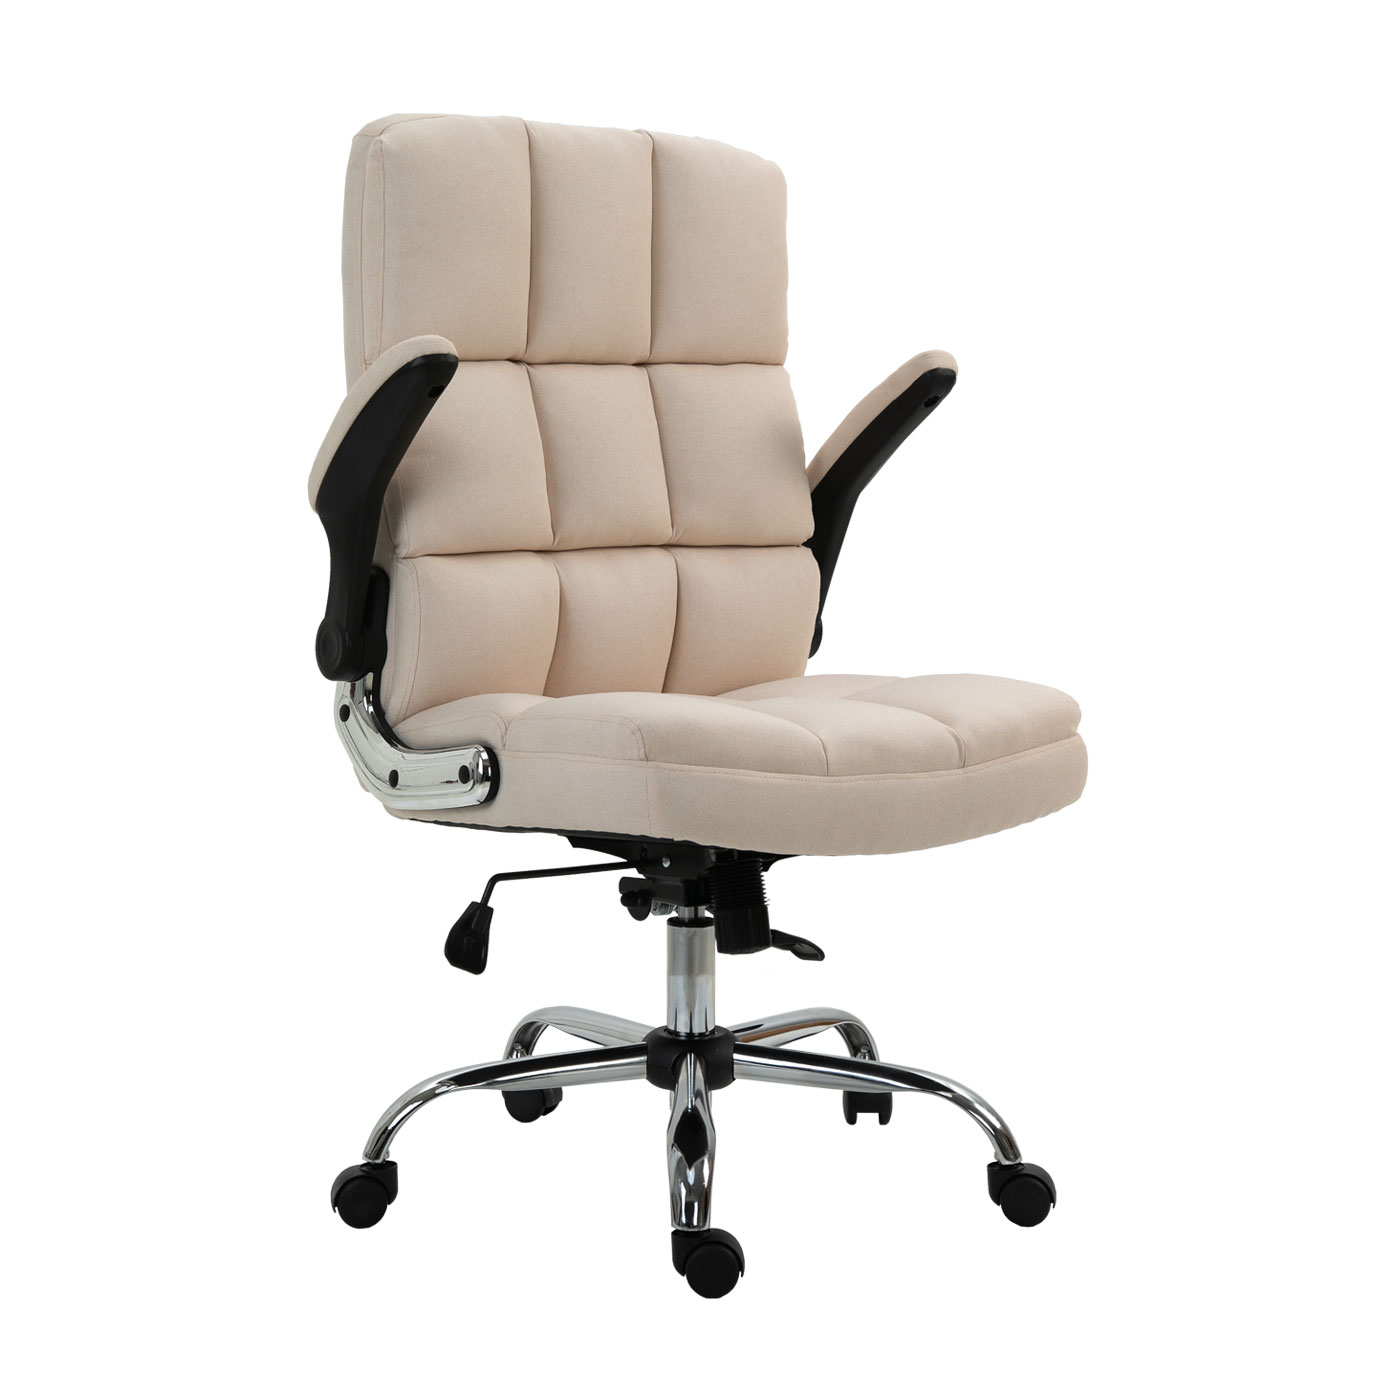 Bürostuhl, Chefsessel Drehstuhl Schreibtischstuhl, höhenverstellbar - Stoff/Textil  creme-beige | Swisshandel24